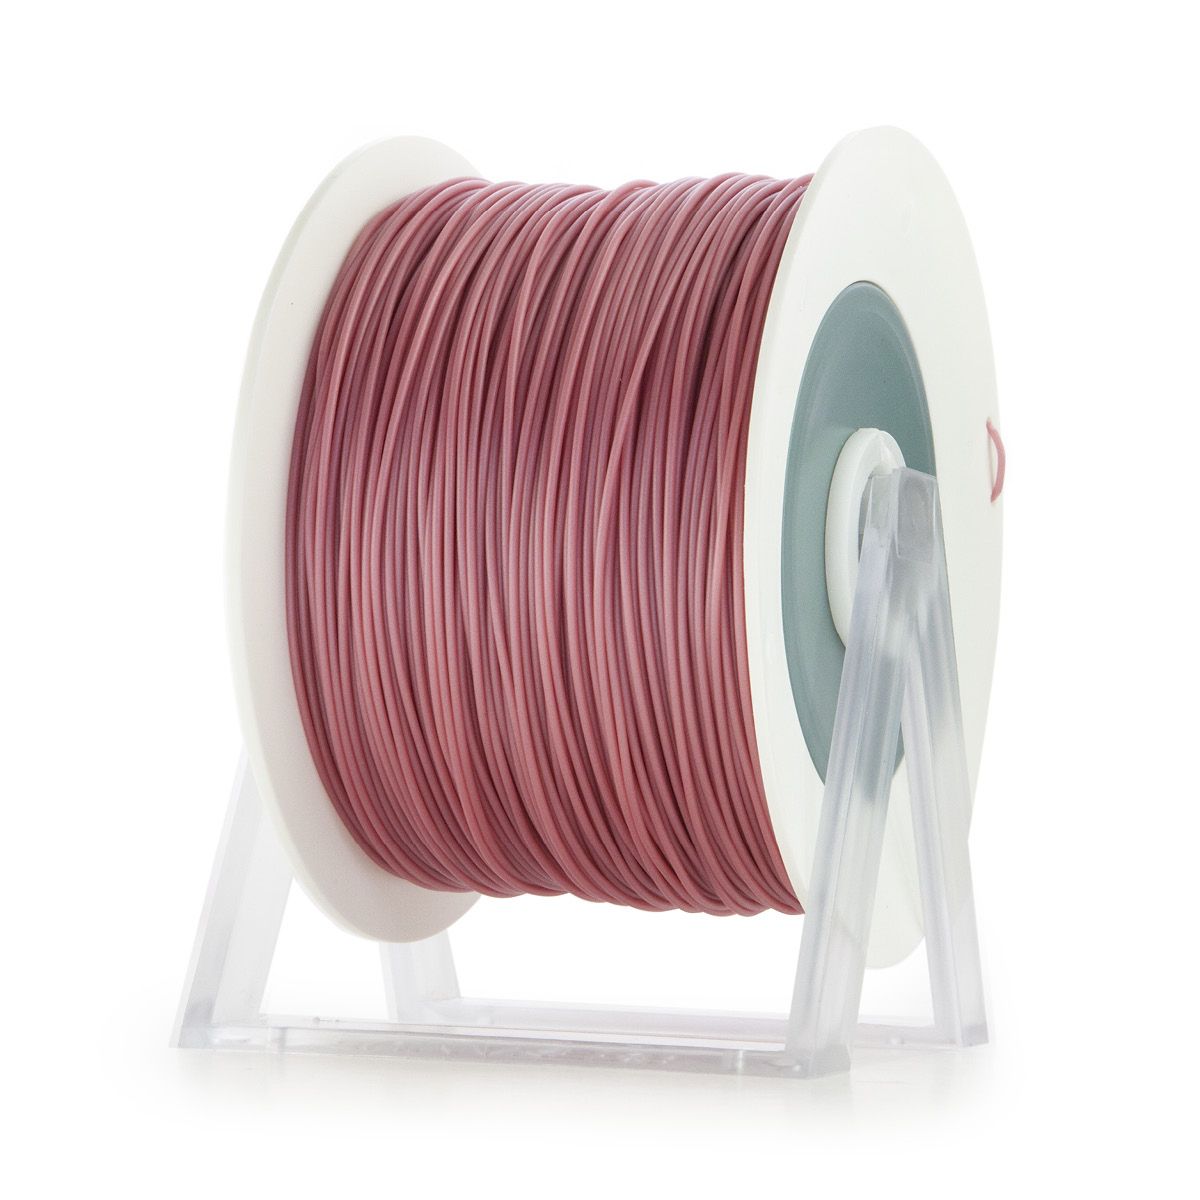 PLA Filament | Color: Metallic Dark Antique Pink